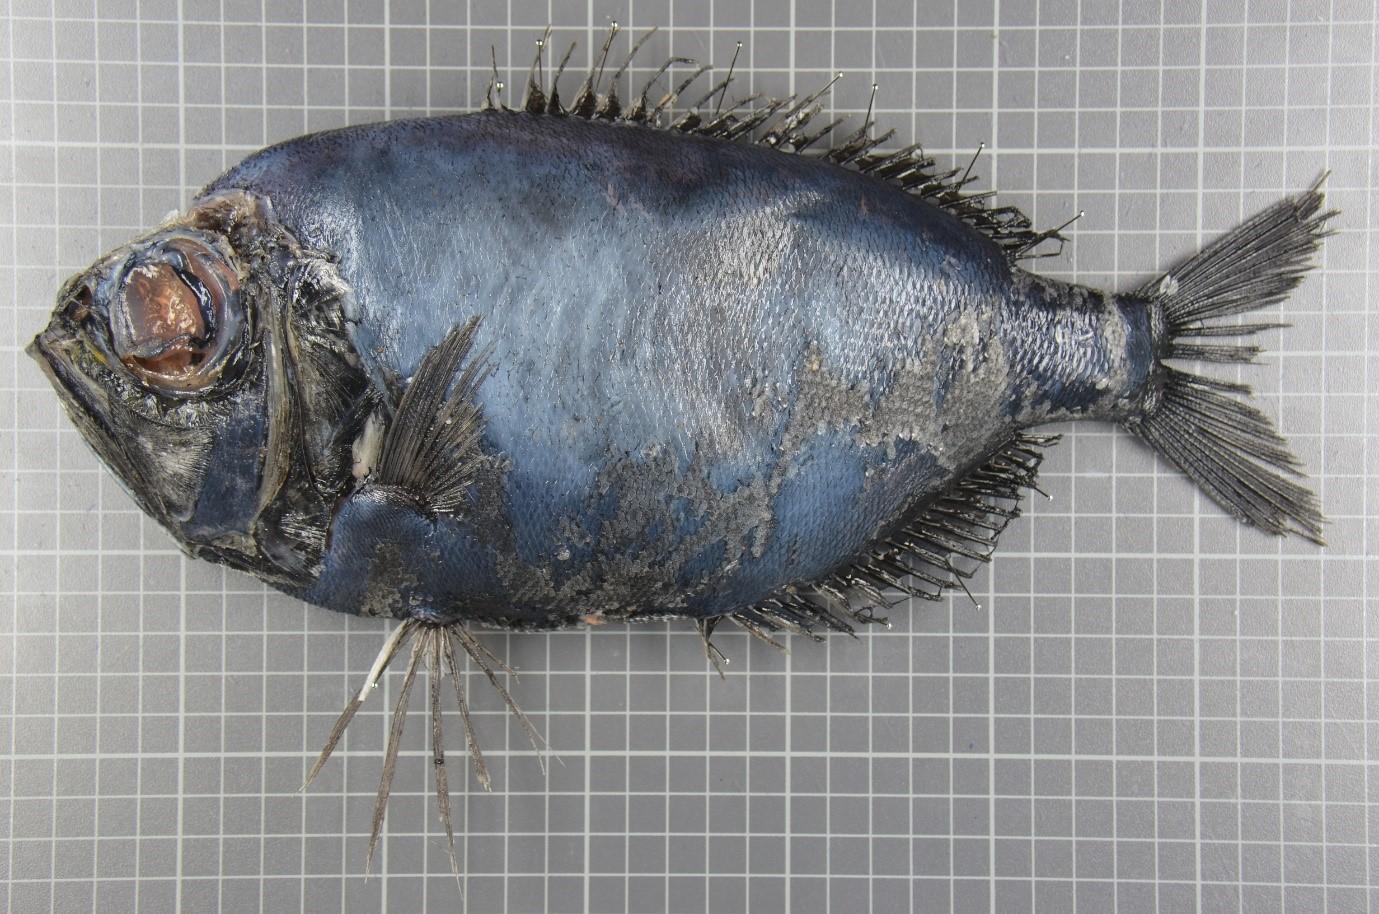 Un spécimen de dirette de Parin (Diretmichthys parini), âgé de 33 ans, un poisson tropical pêché en mer du Nord. [IFREMER - Pierre Cresson]